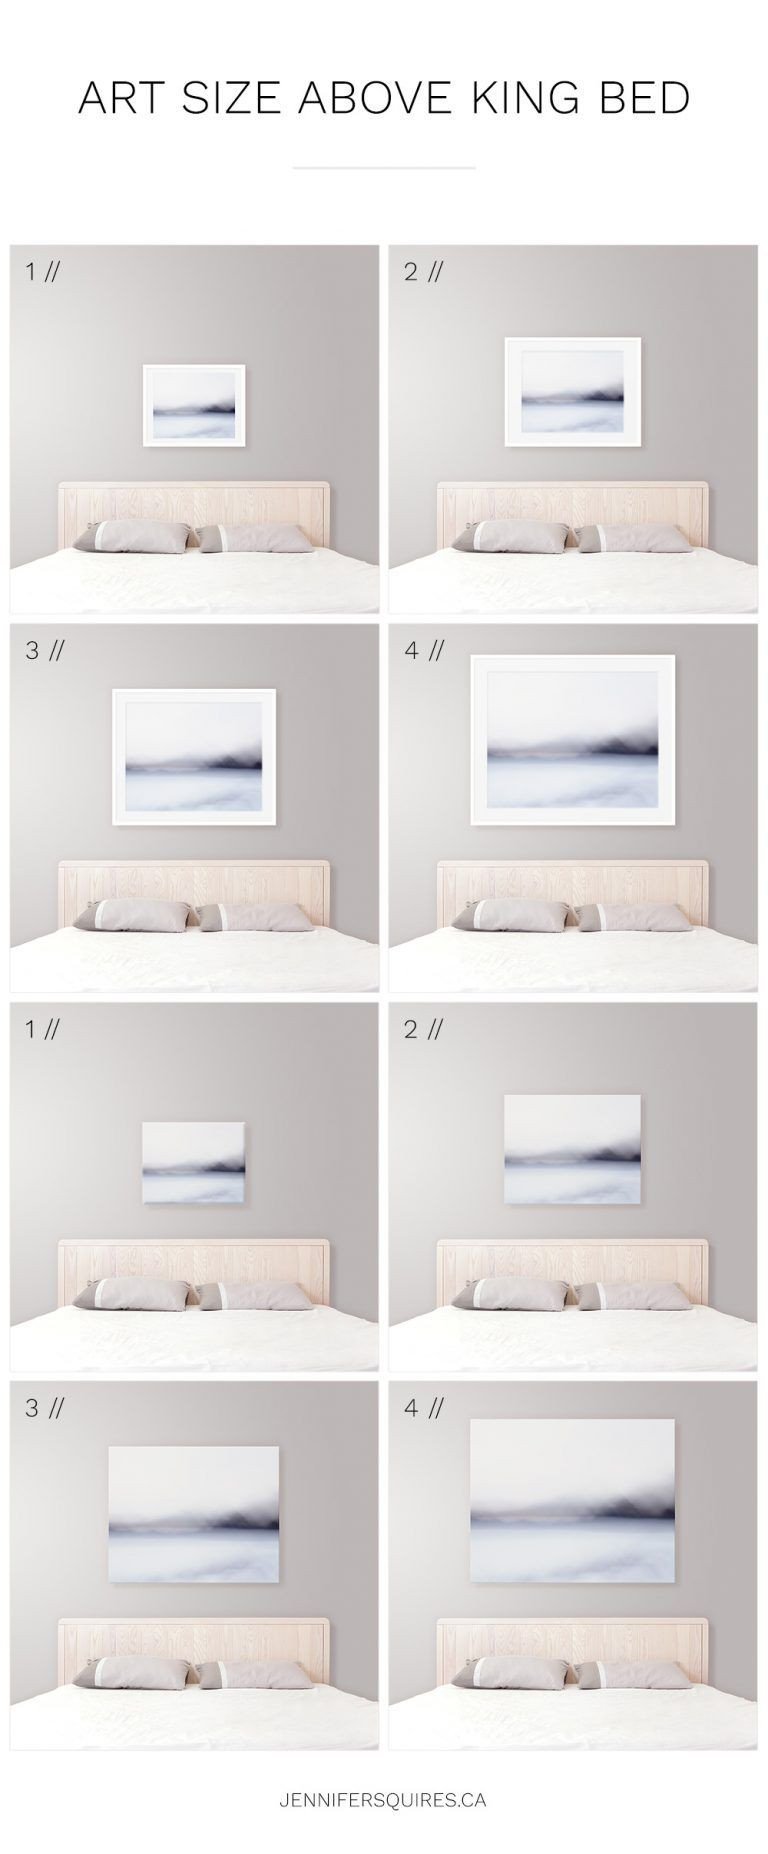 Artwork for Bedroom Walls Unique Ideal Art Size King Bed Modern Coastal Bedroom Decor